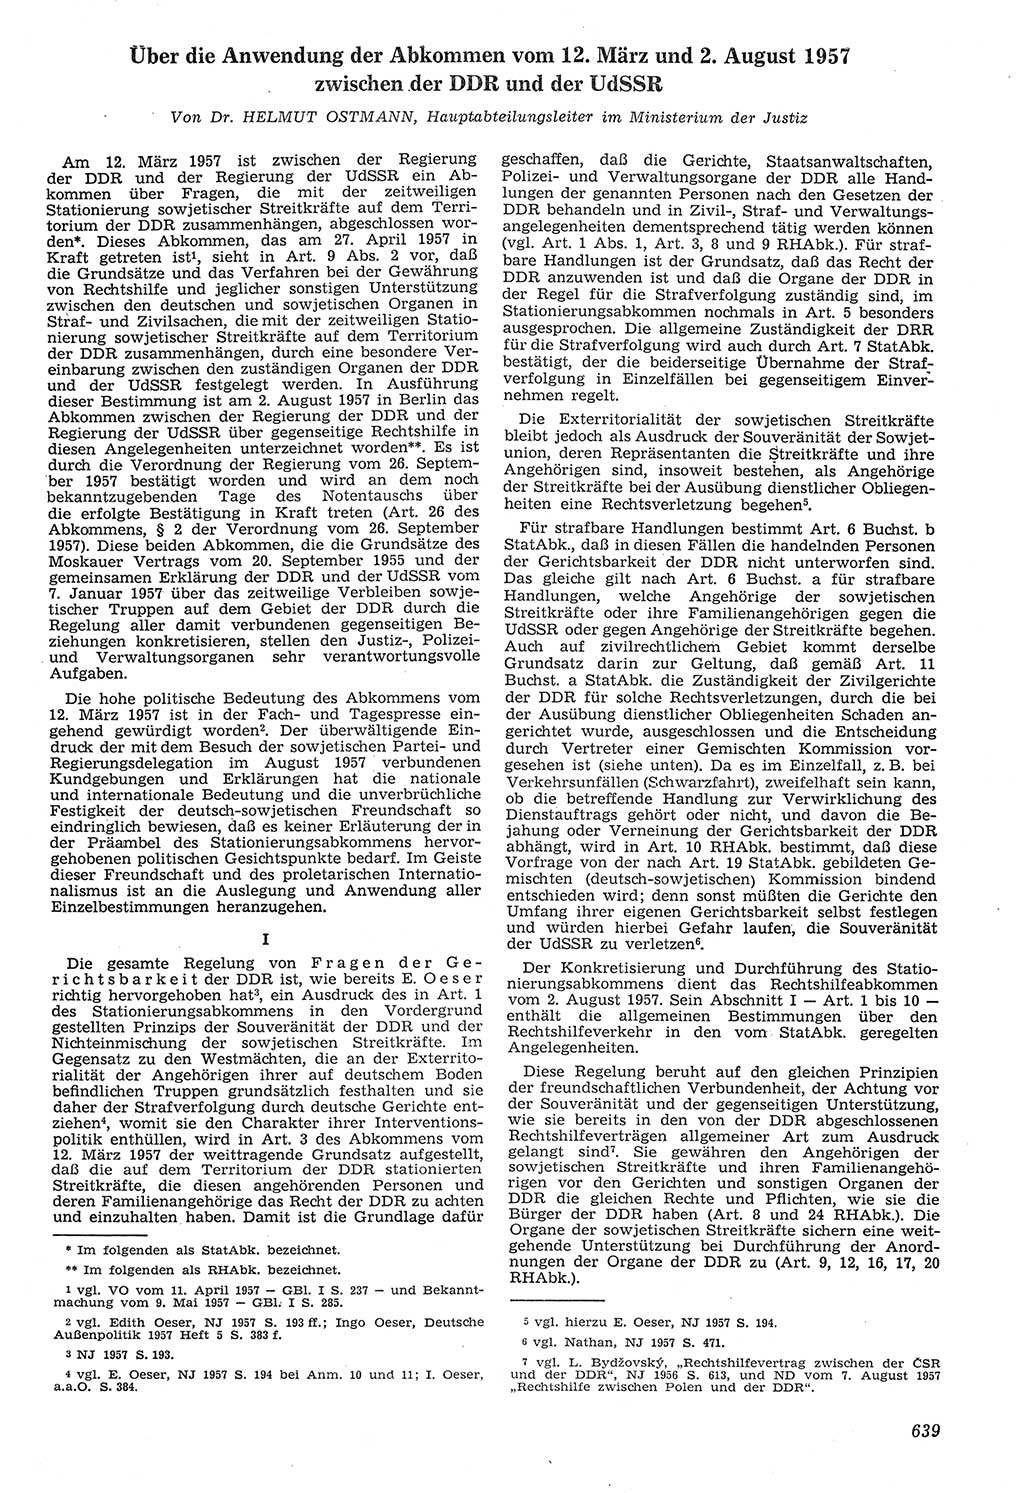 Neue Justiz (NJ), Zeitschrift für Recht und Rechtswissenschaft [Deutsche Demokratische Republik (DDR)], 11. Jahrgang 1957, Seite 639 (NJ DDR 1957, S. 639)